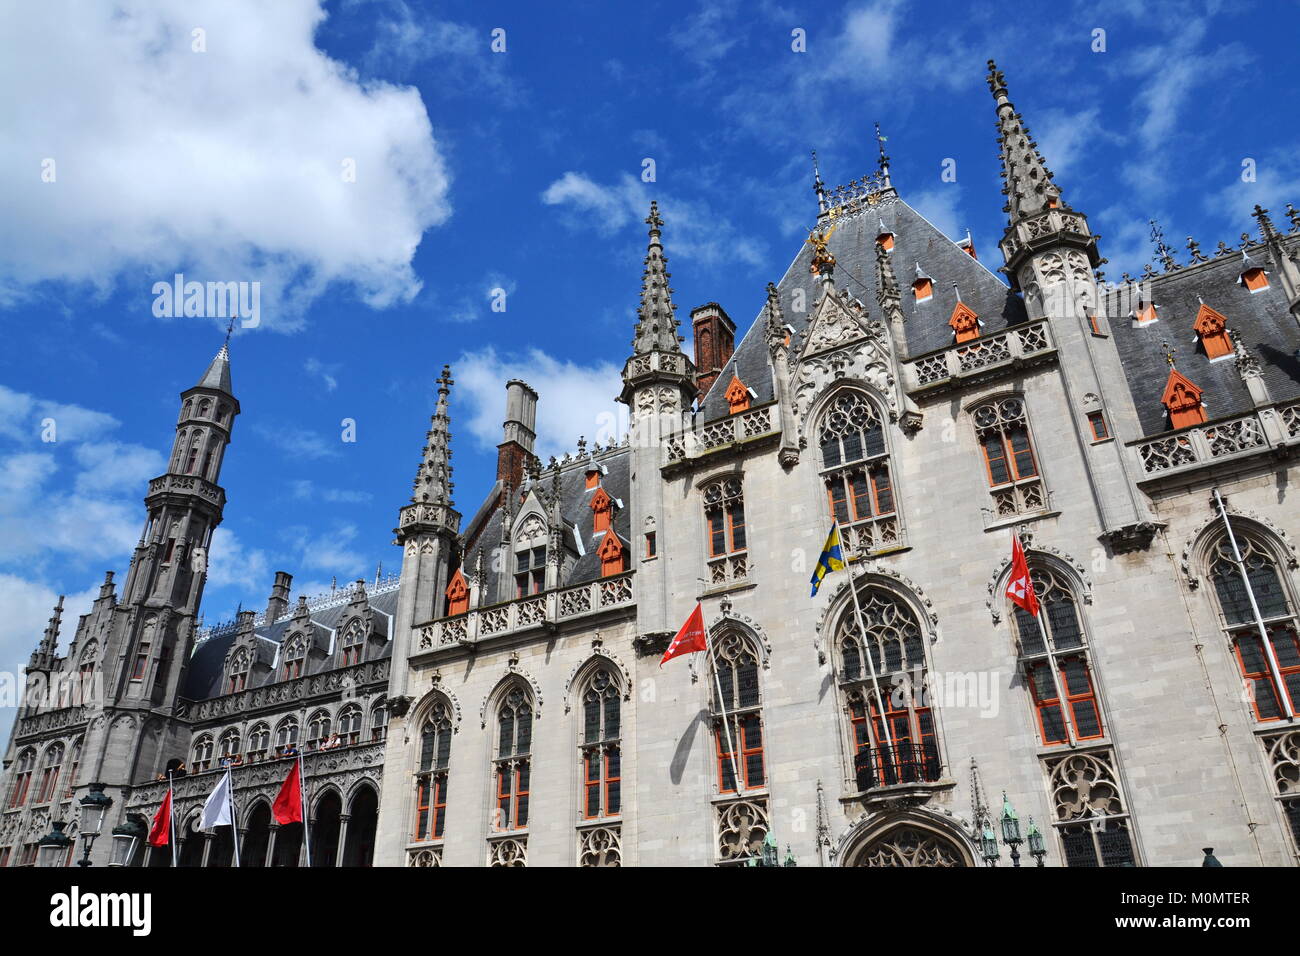 Provinciaal Hof - Province Cour sur place du marché, Bruges, Belgique Banque D'Images